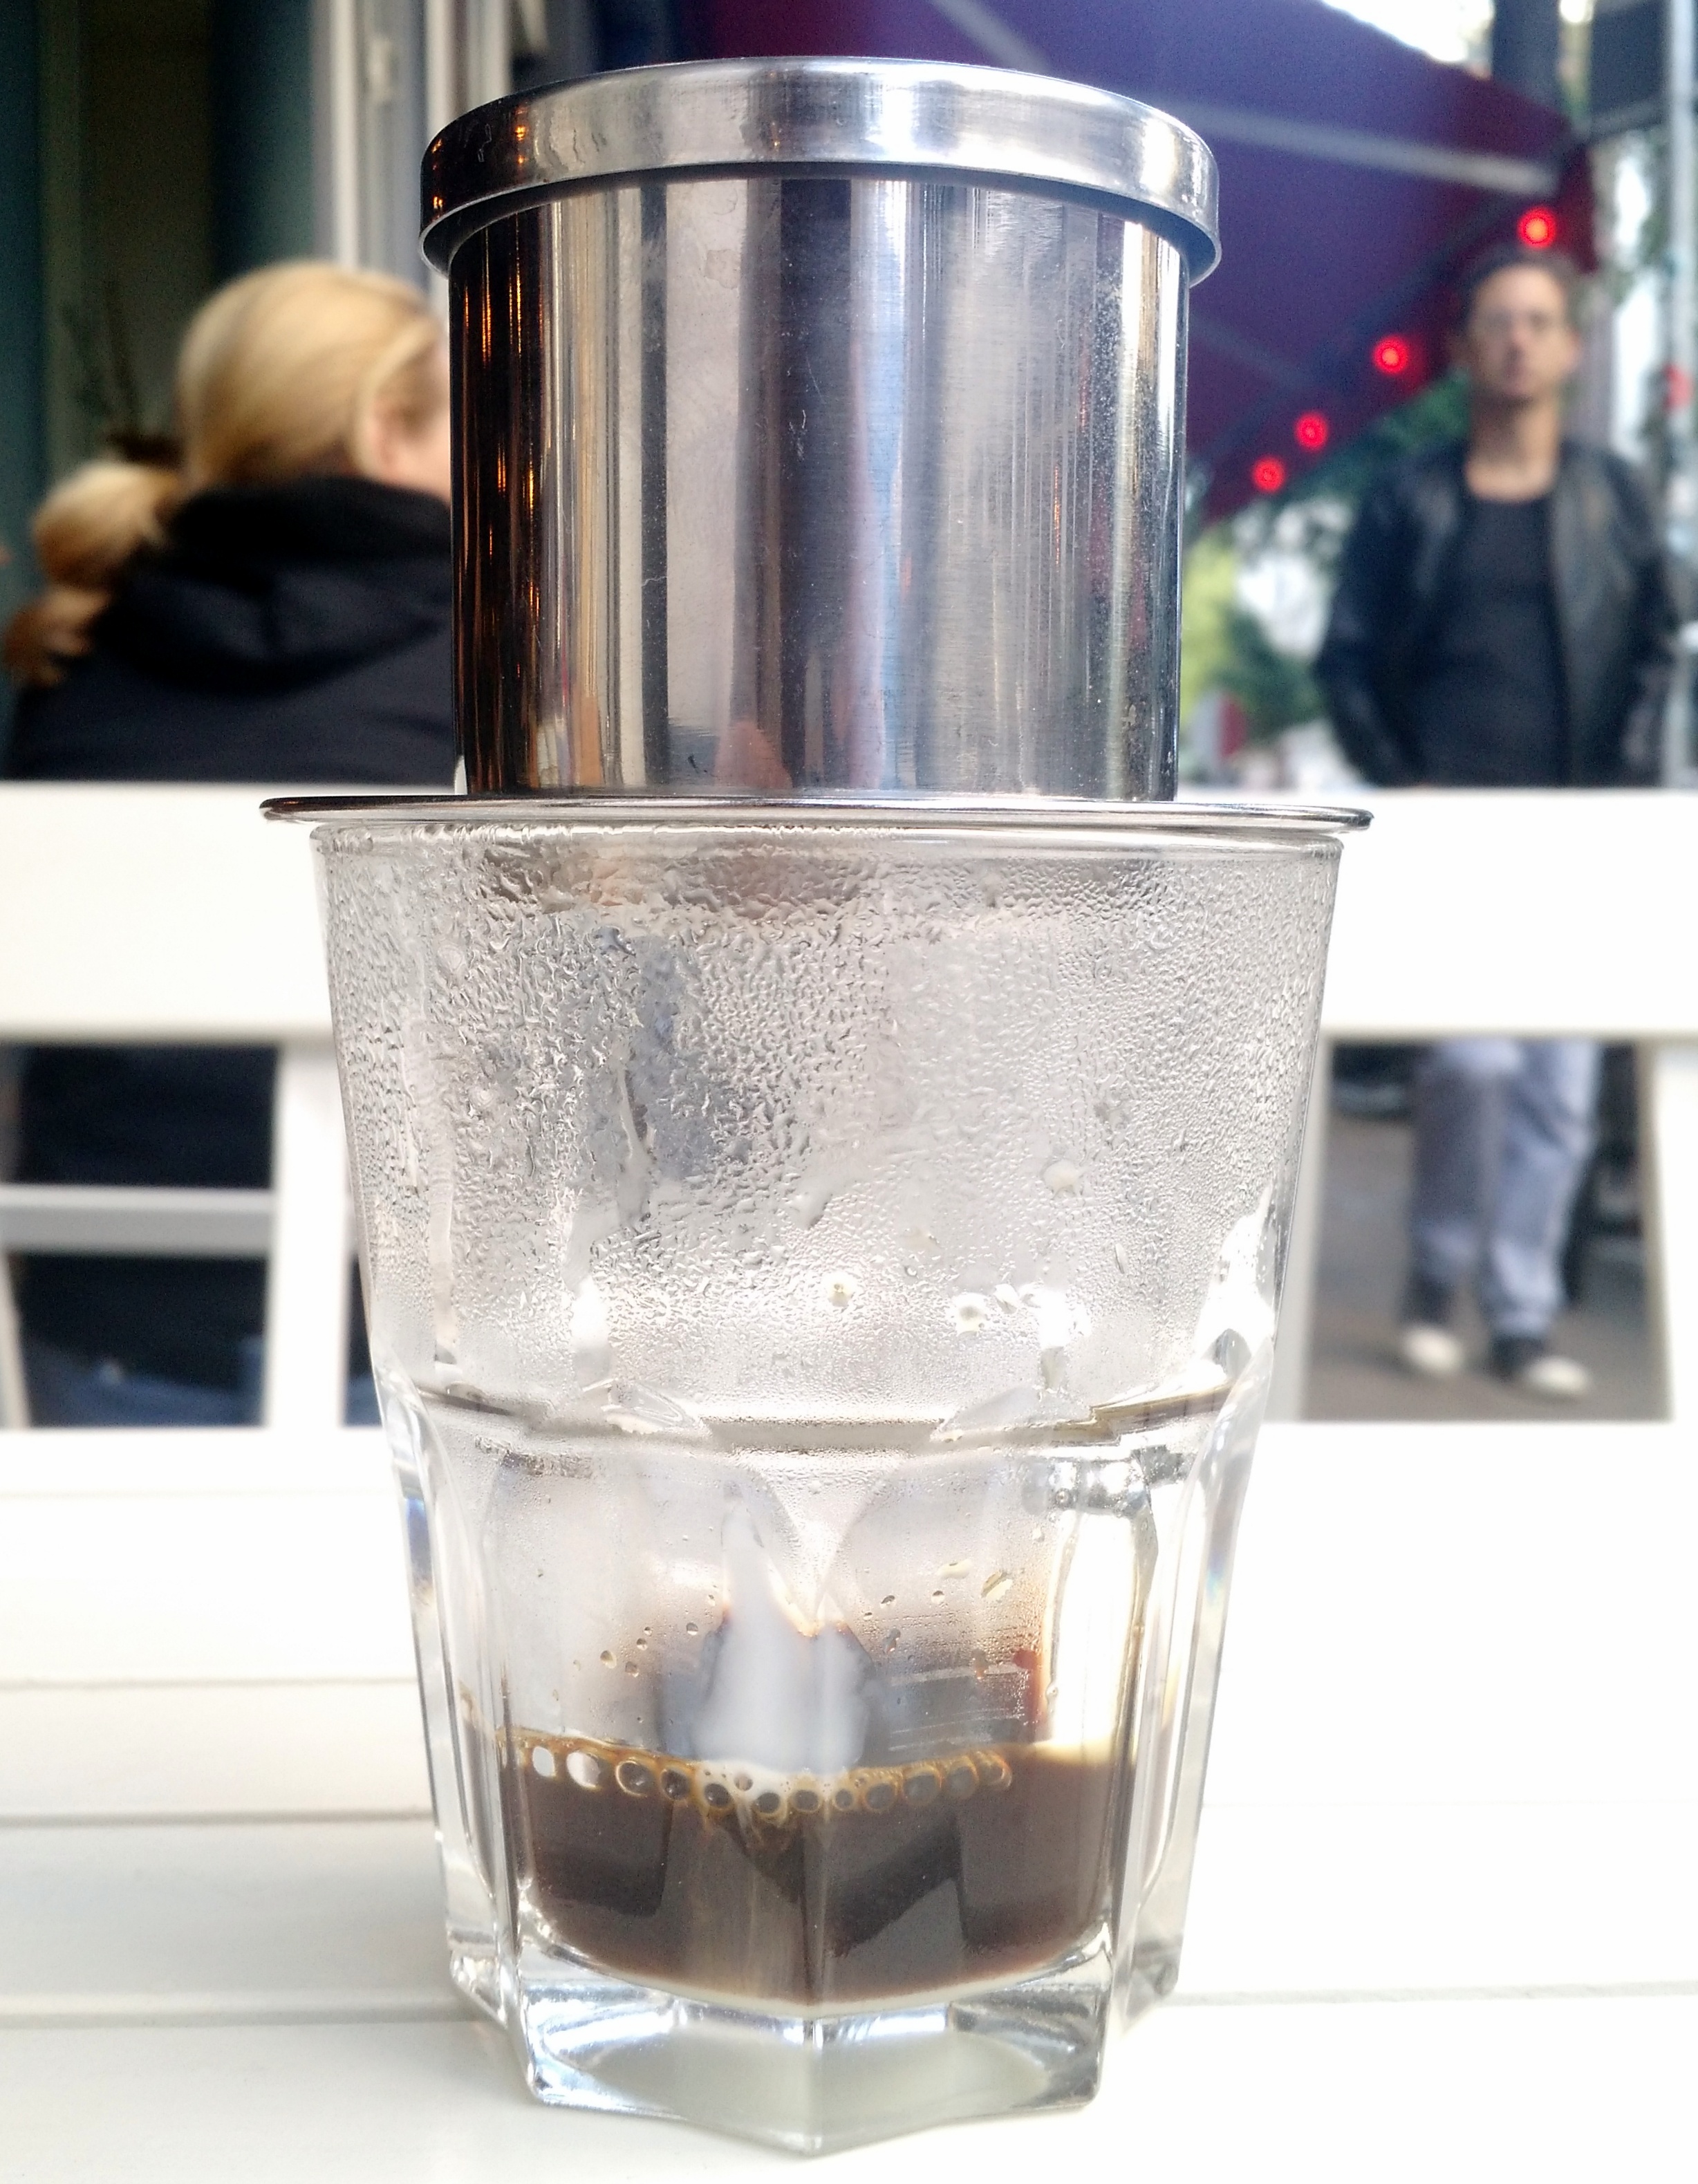 Vietnamesischer Kaffee